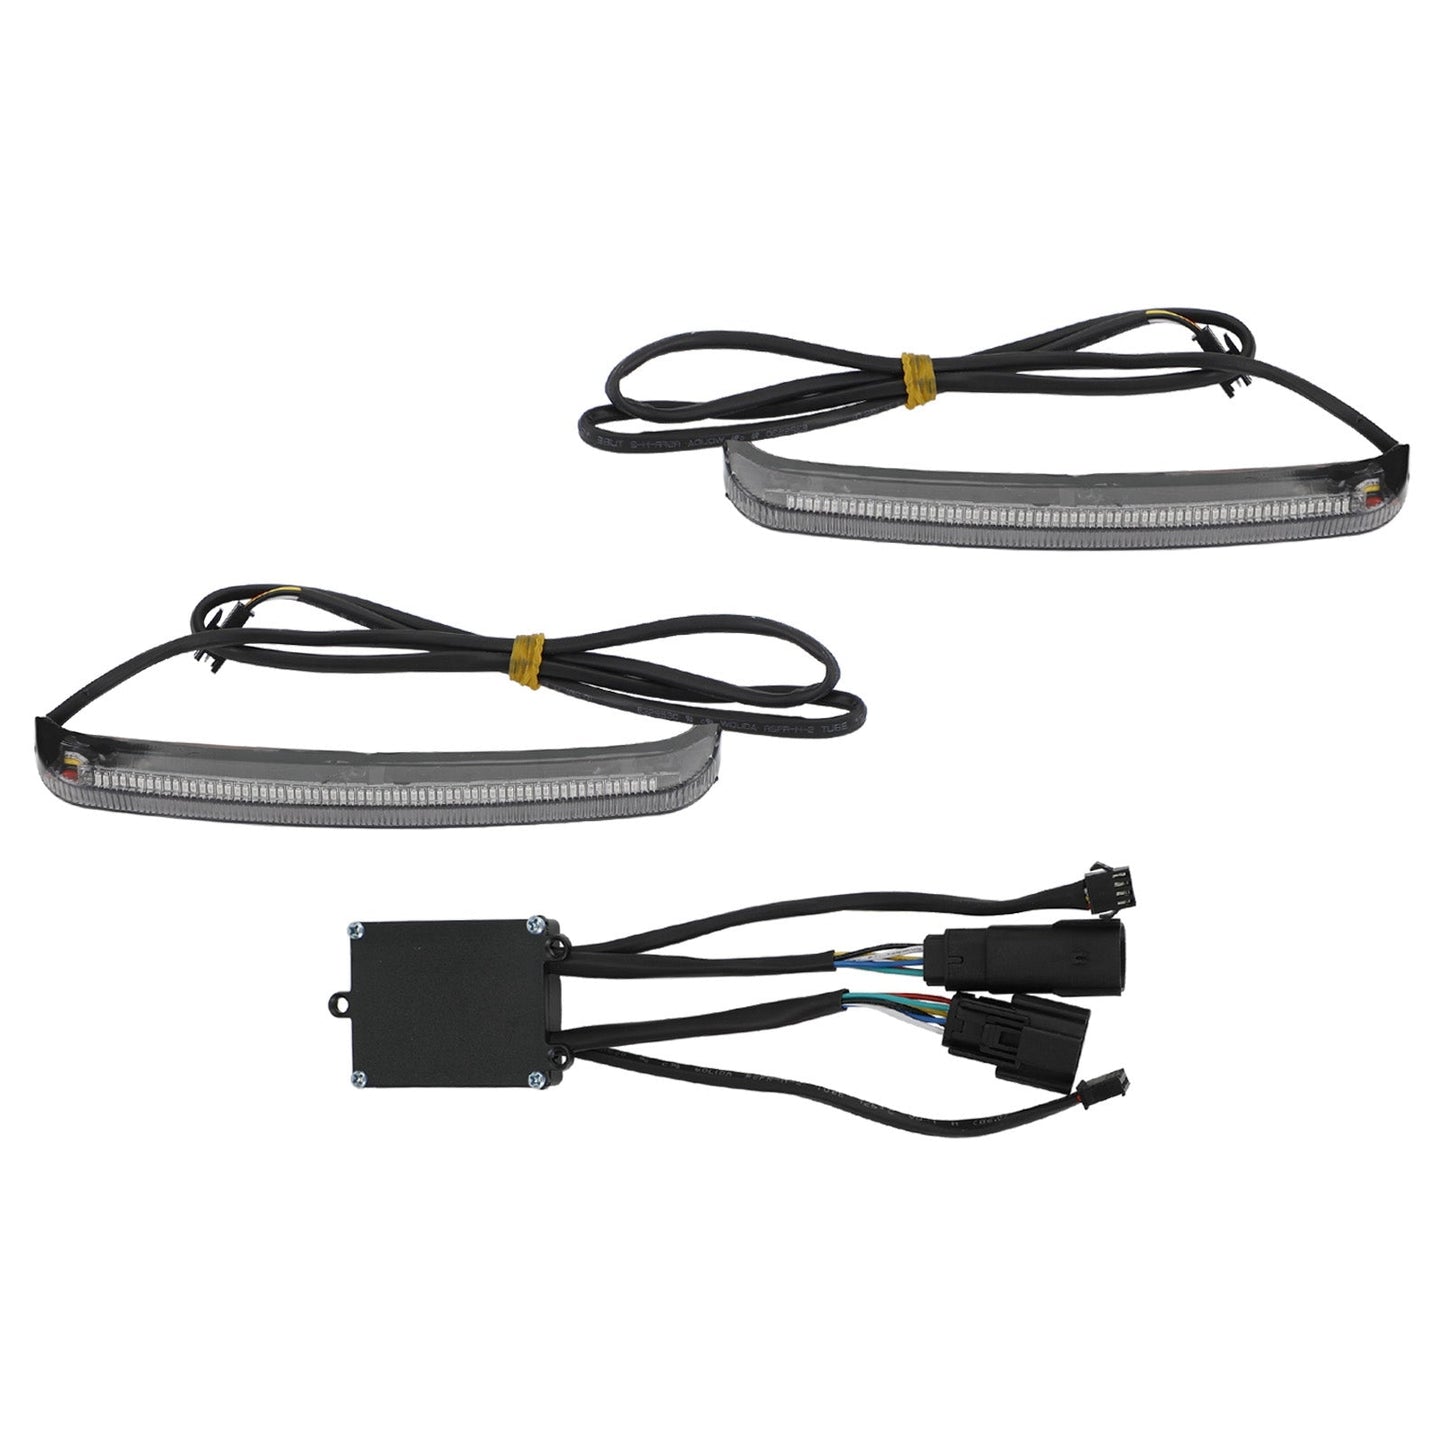 Road Glide FLHR CVO 2014–2022 Satteltaschen-LED mit fließendem Blinker